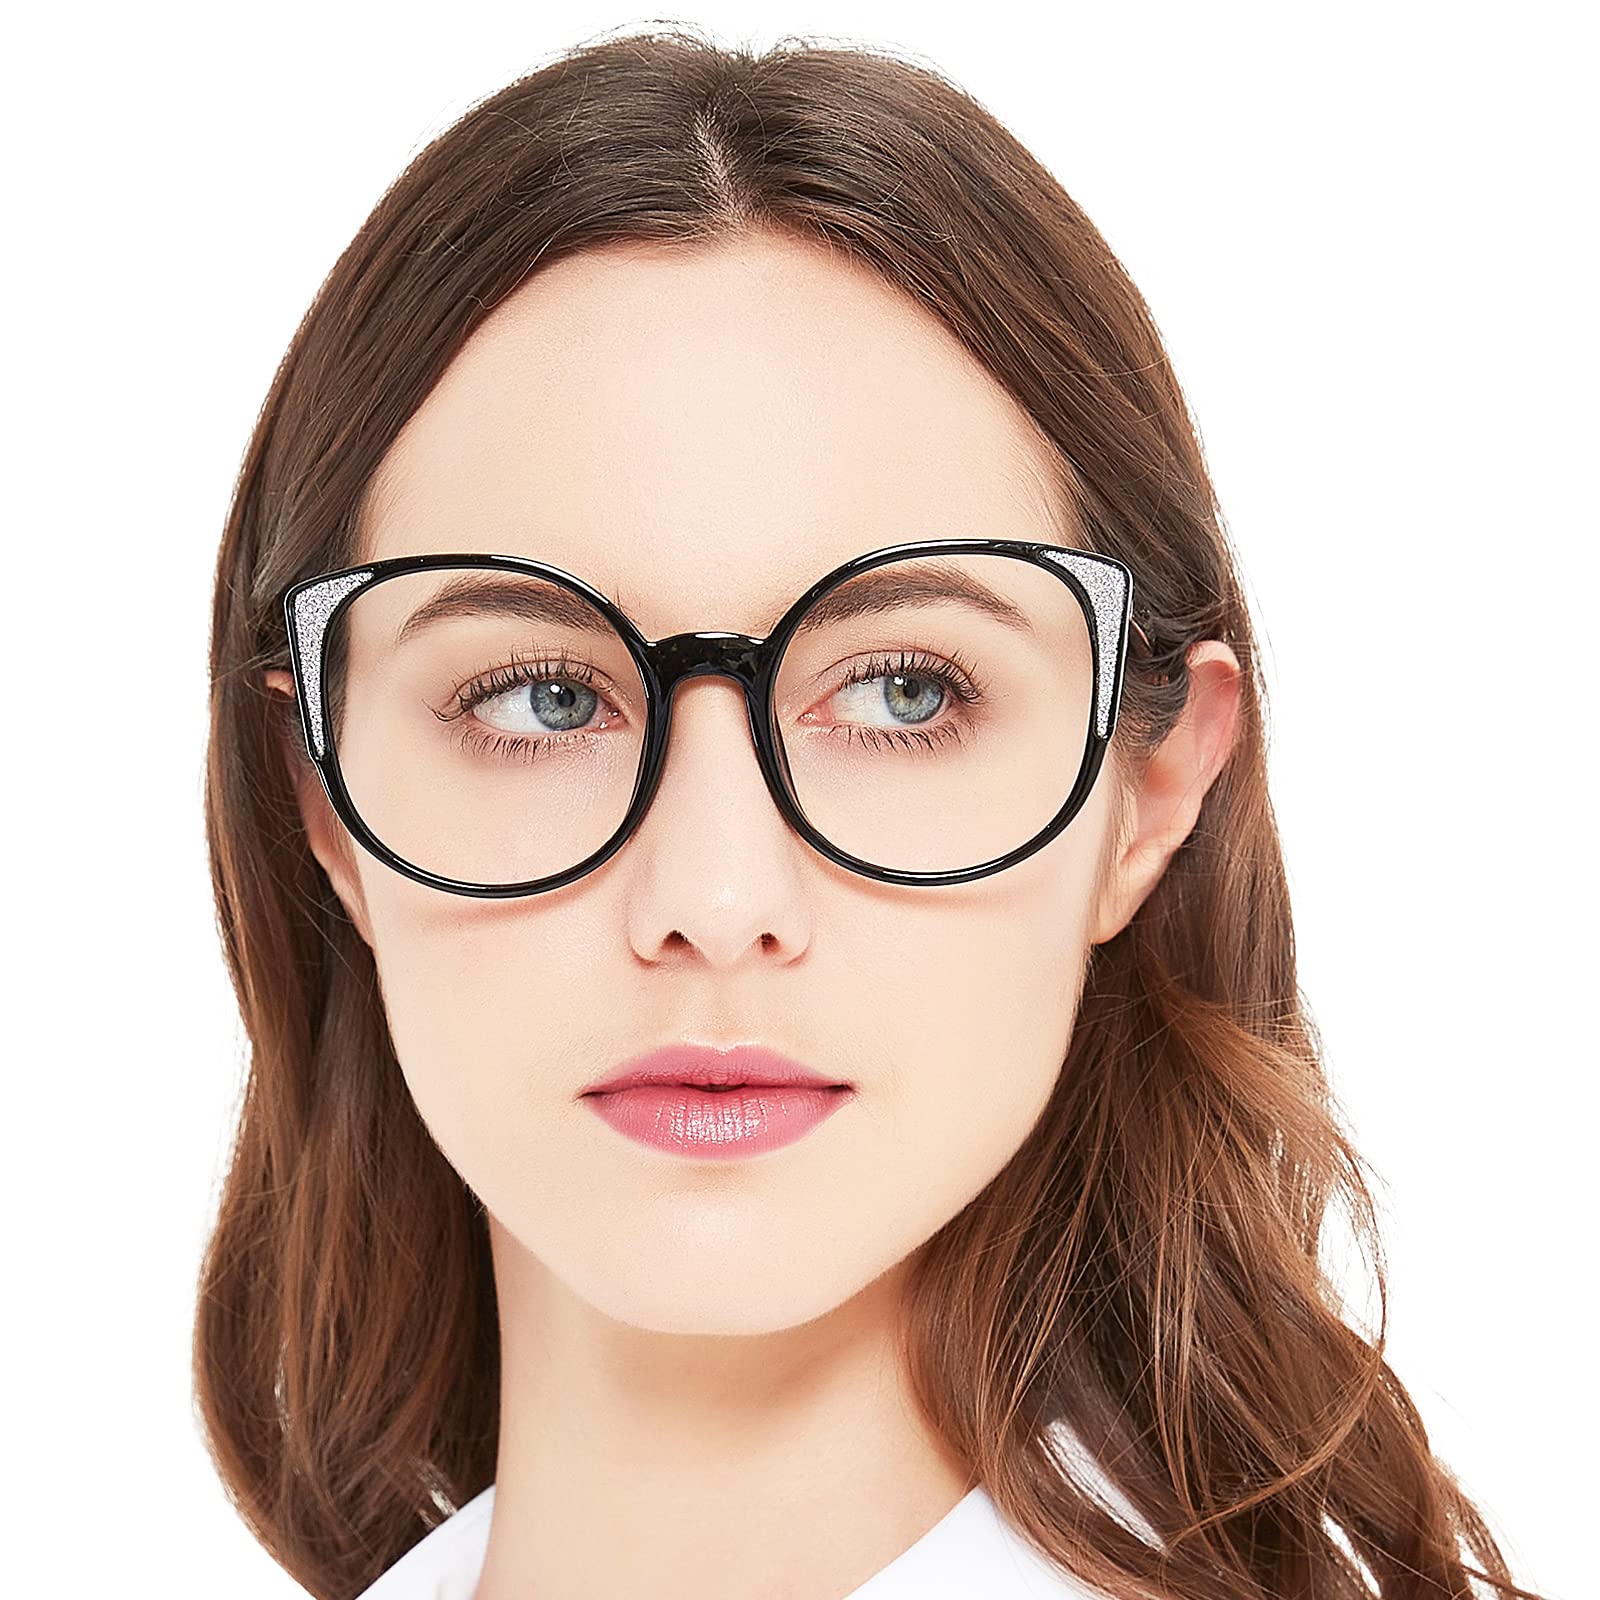 OCCI CHIARI Oversized Designer Reading Glasses Women's Readers